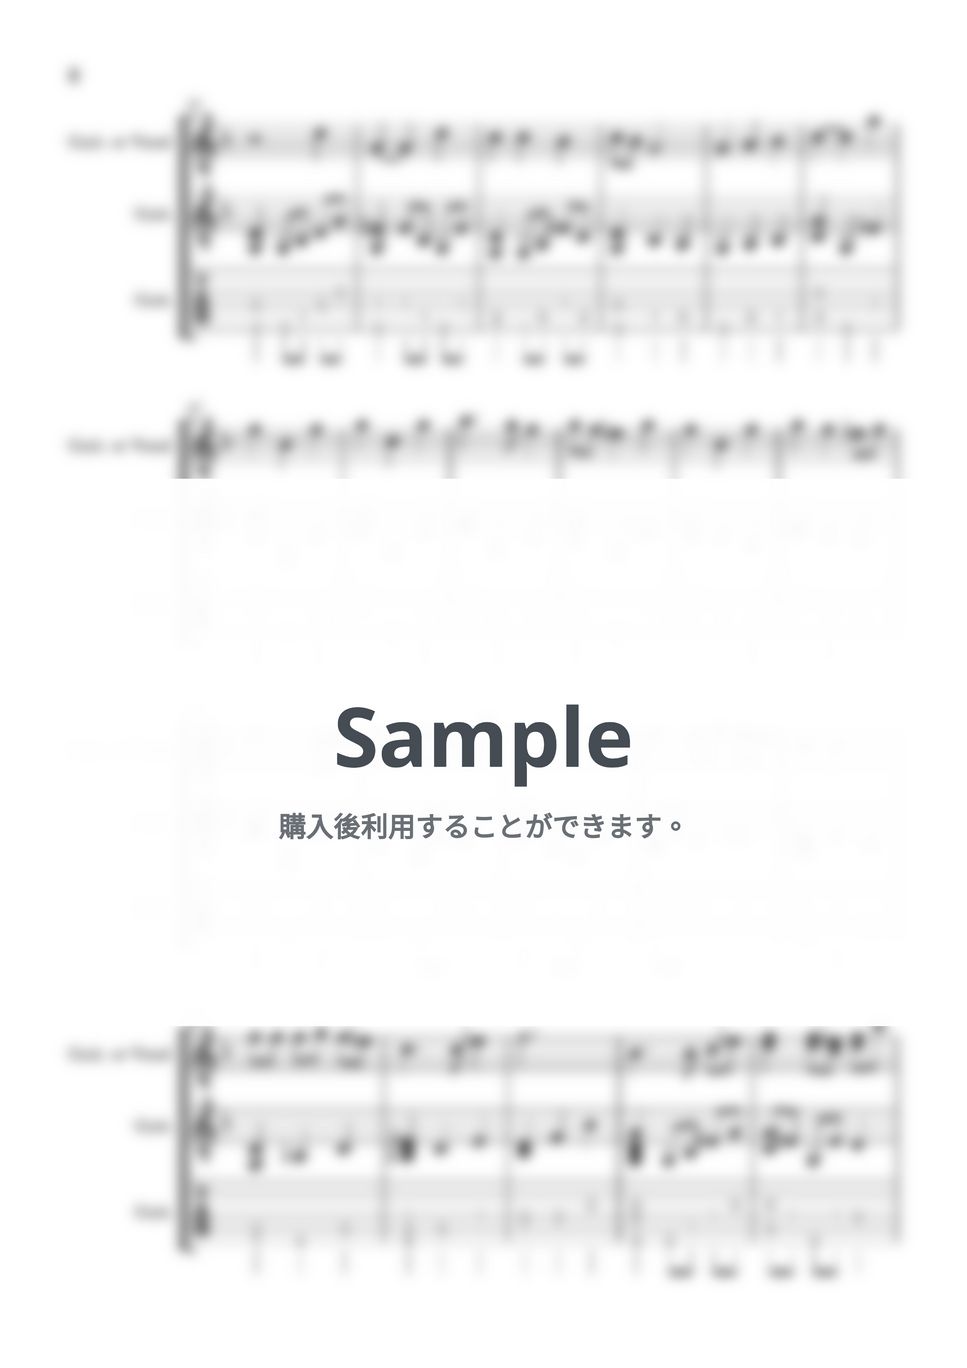 セシル・コルベル - Arrietty's Song (ギター / J-POP / アリエッティ) by 川西 三裕